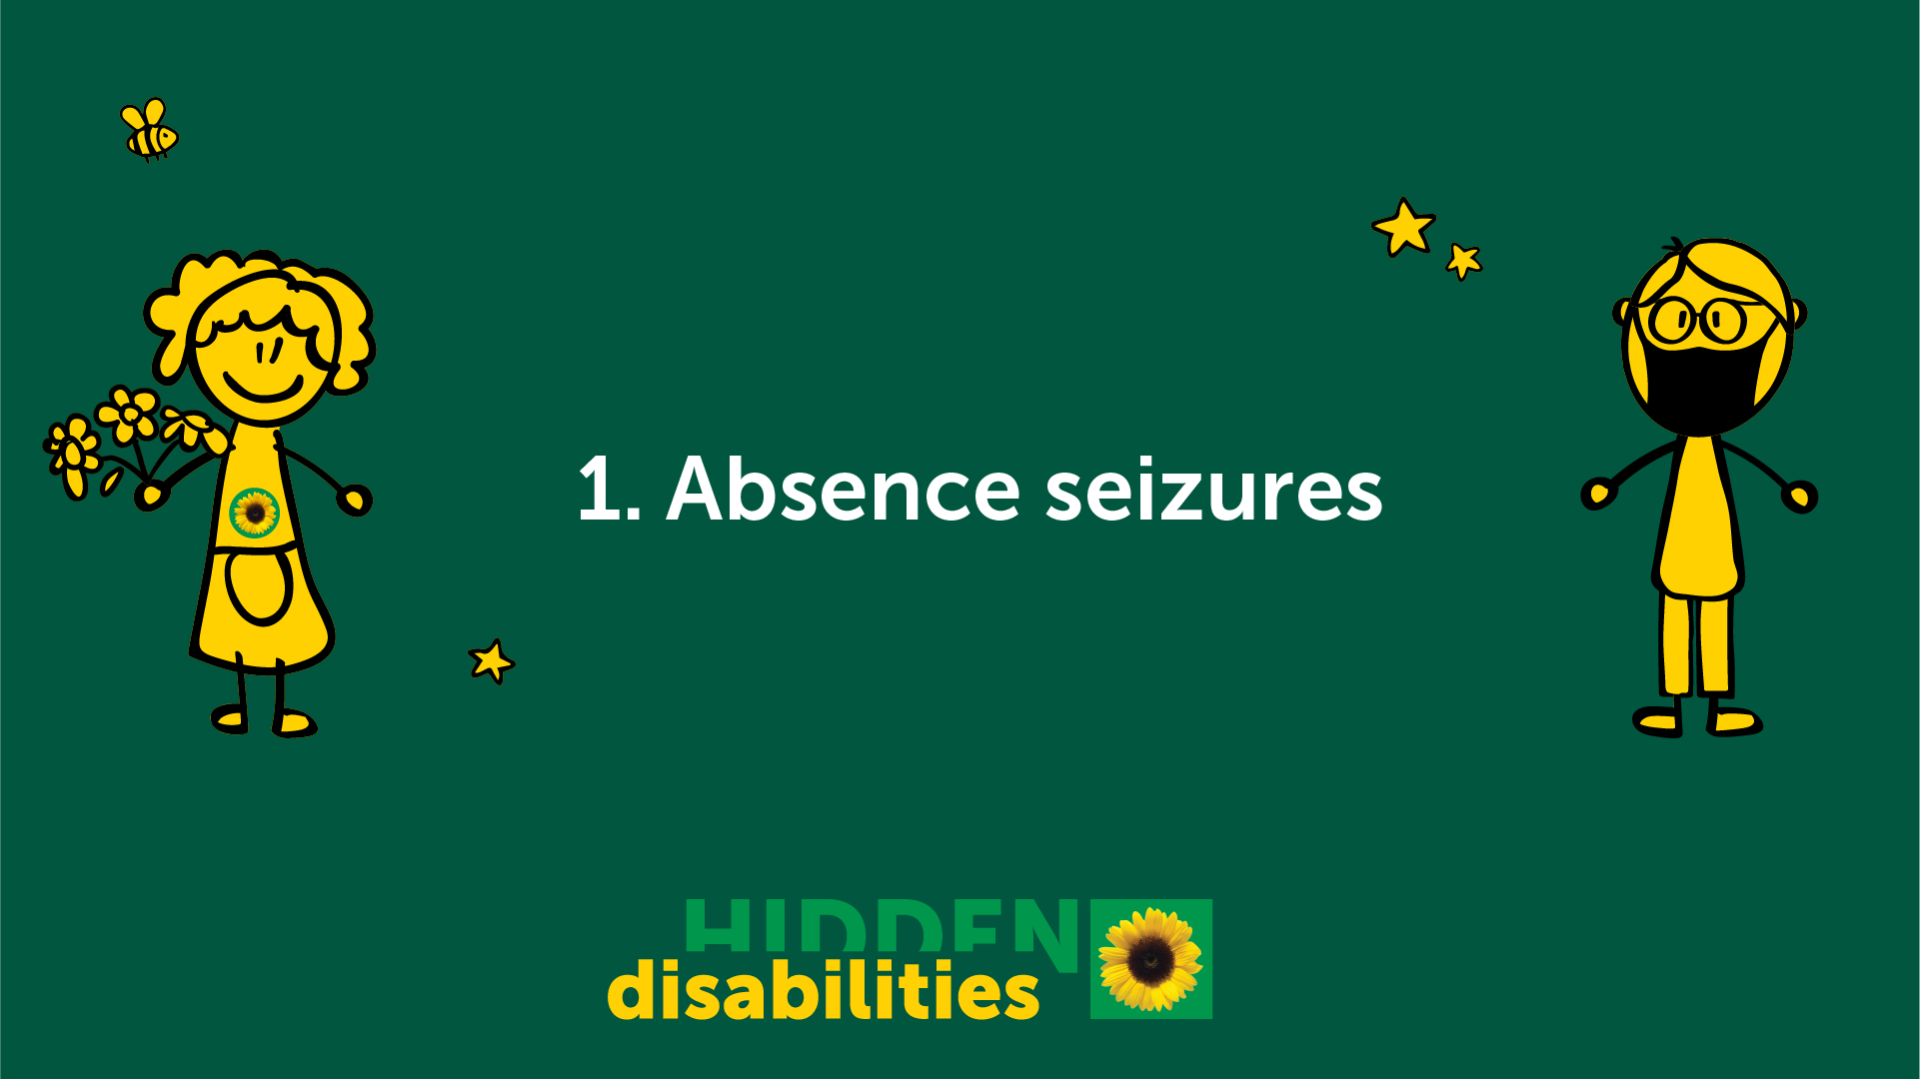 Absence seizures